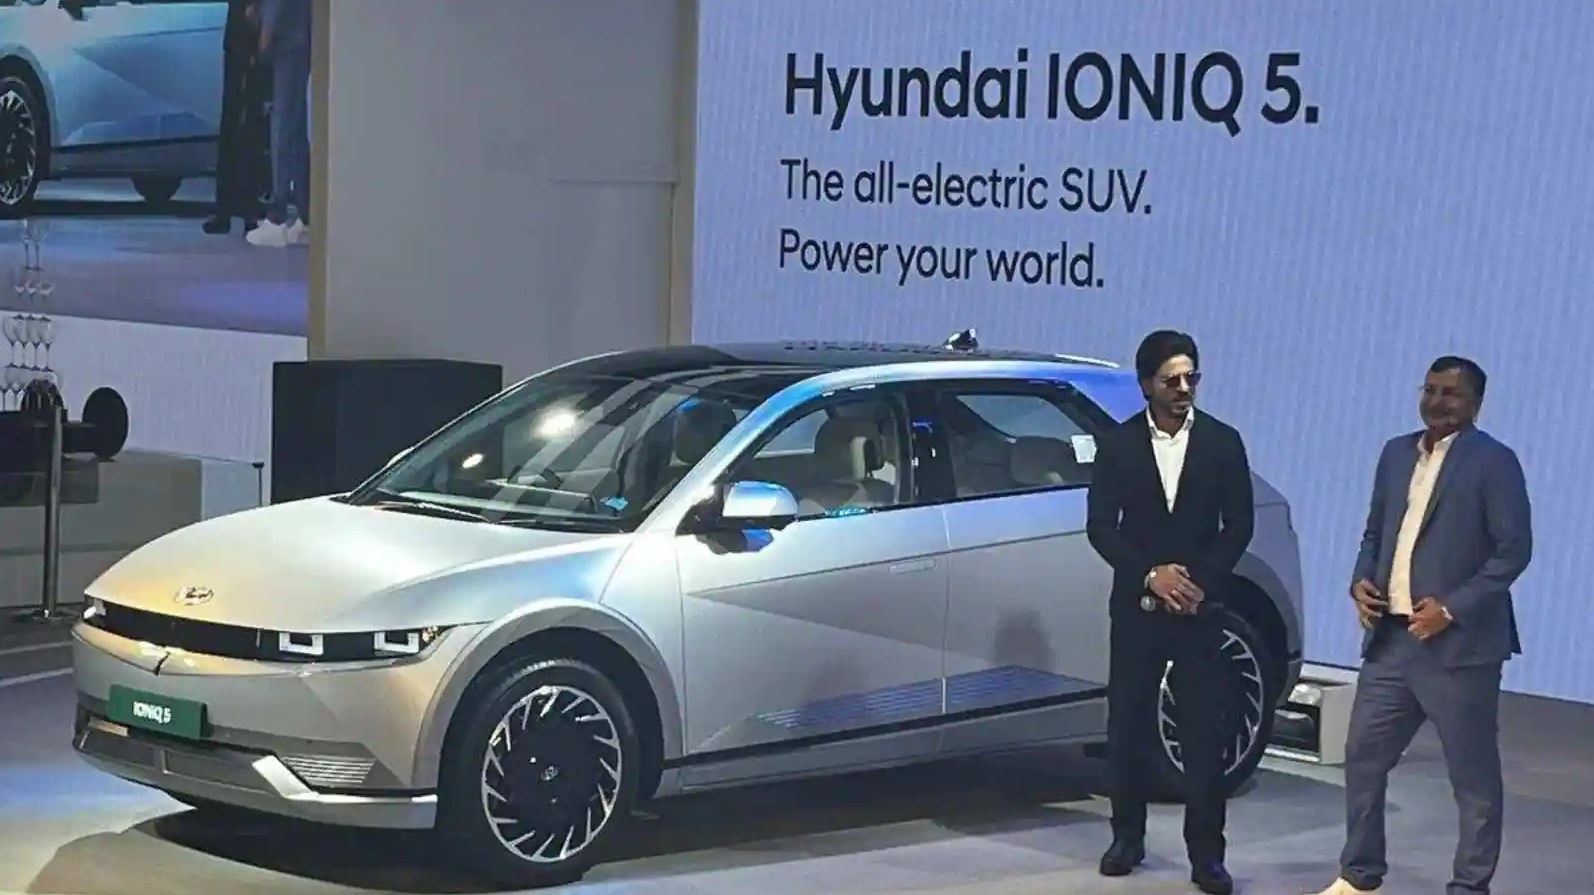 Hyundai Ioniq 5 Electric SUV